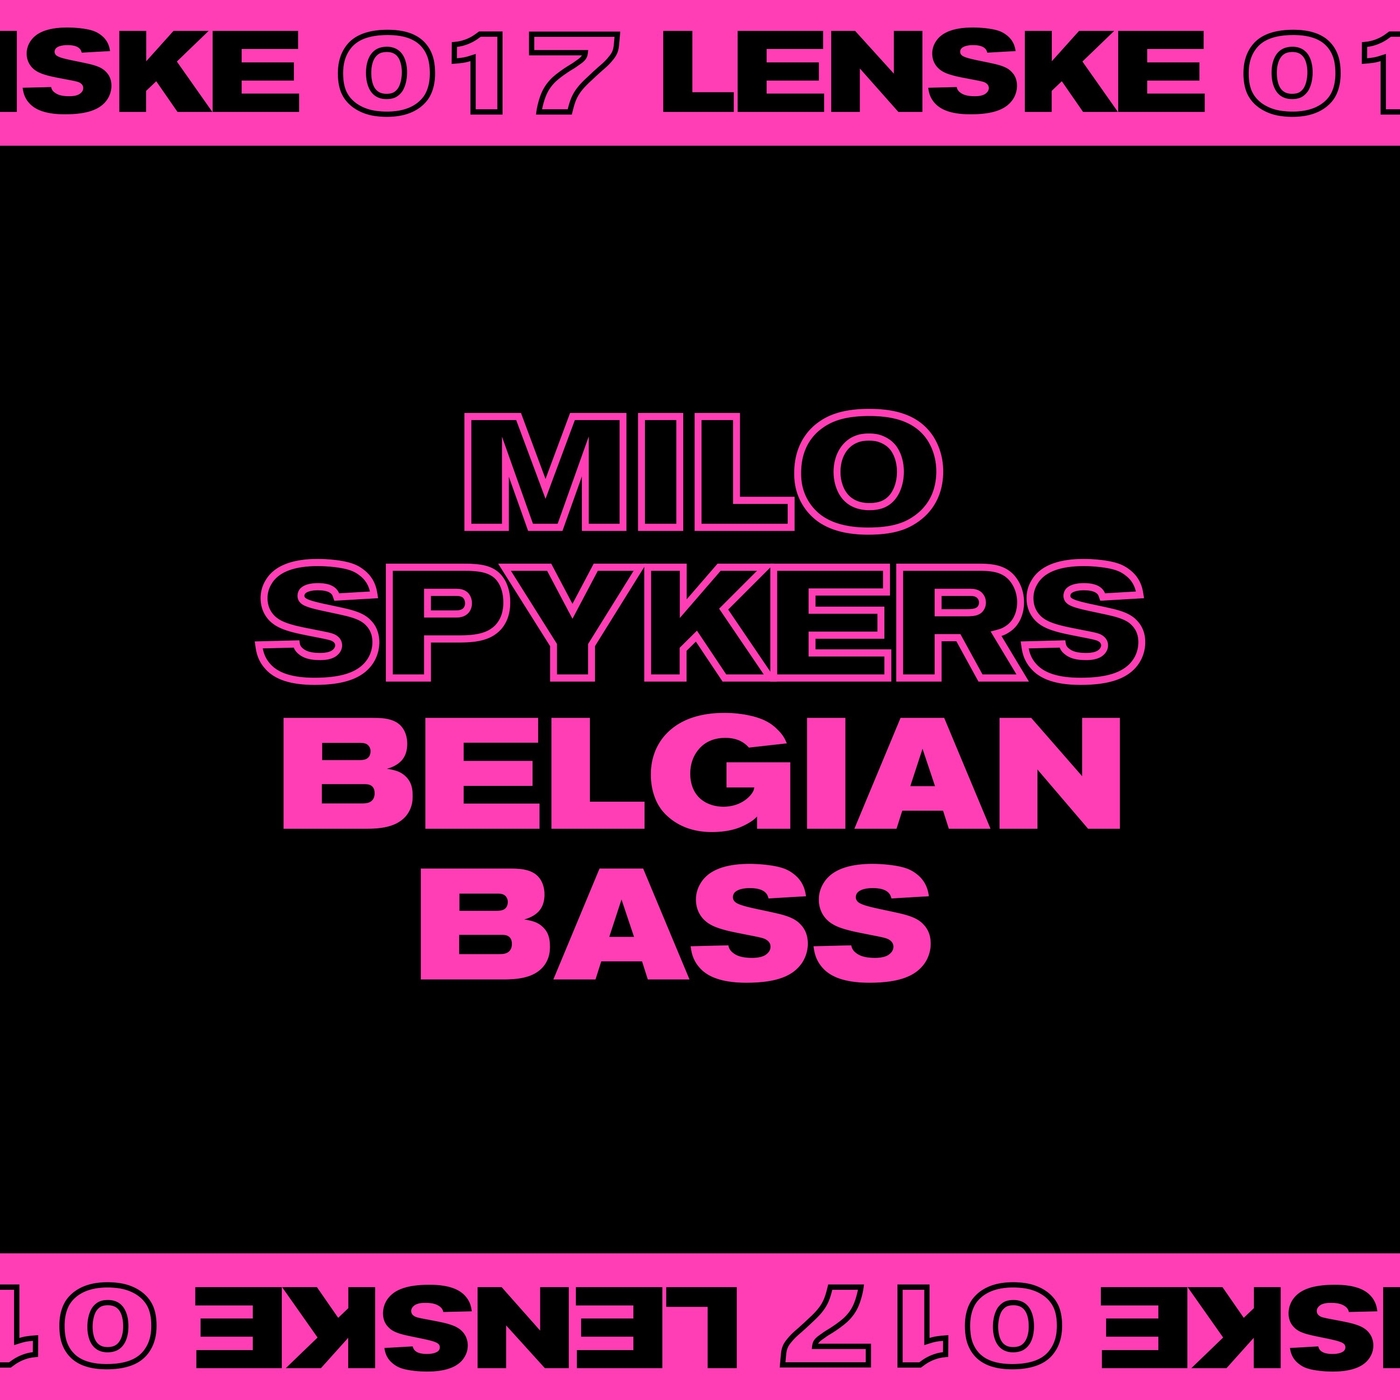 Milo Spyker - Belgian Bass EP [LENSKE017D]